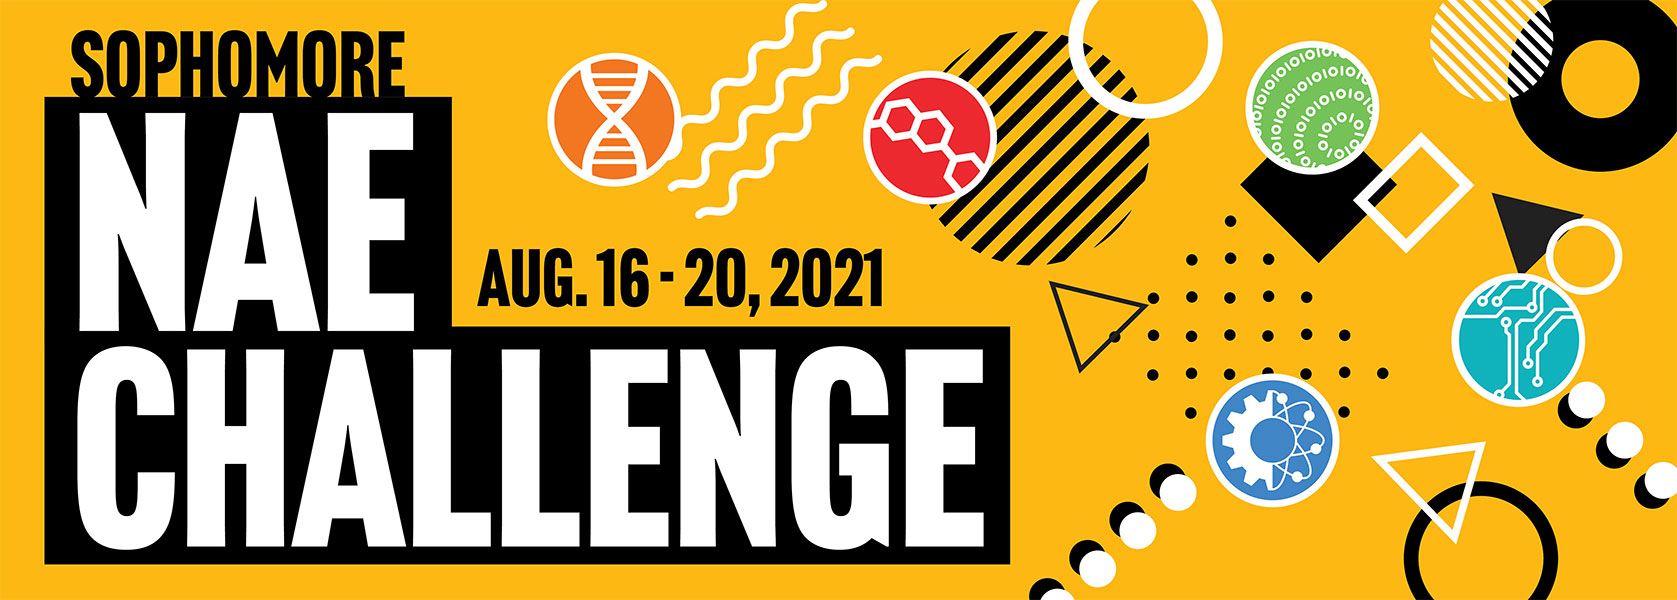 Sophomore NAE Challenge 2021 Banner